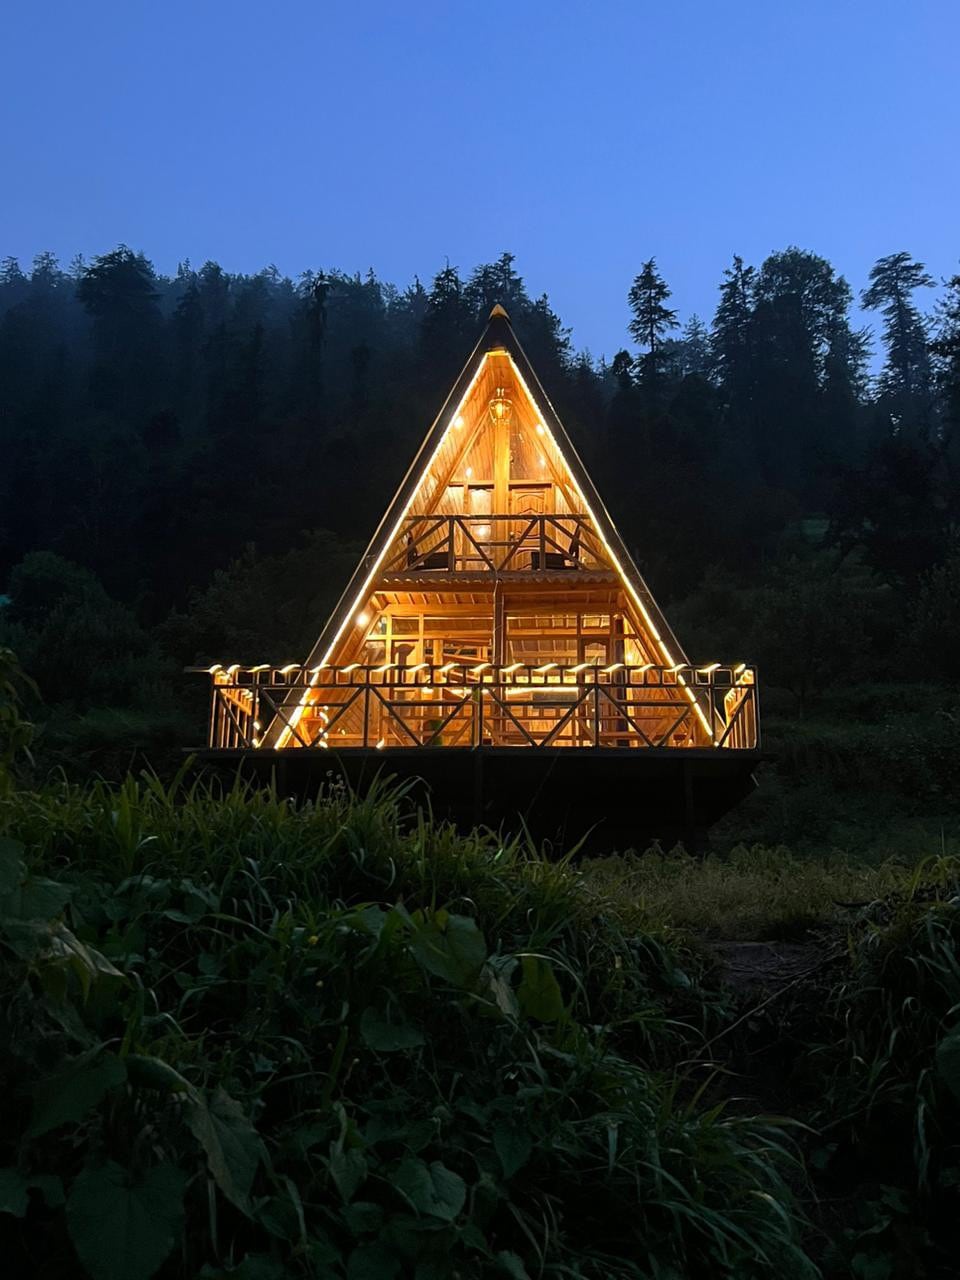 可欣赏大自然景观的舒适小木屋